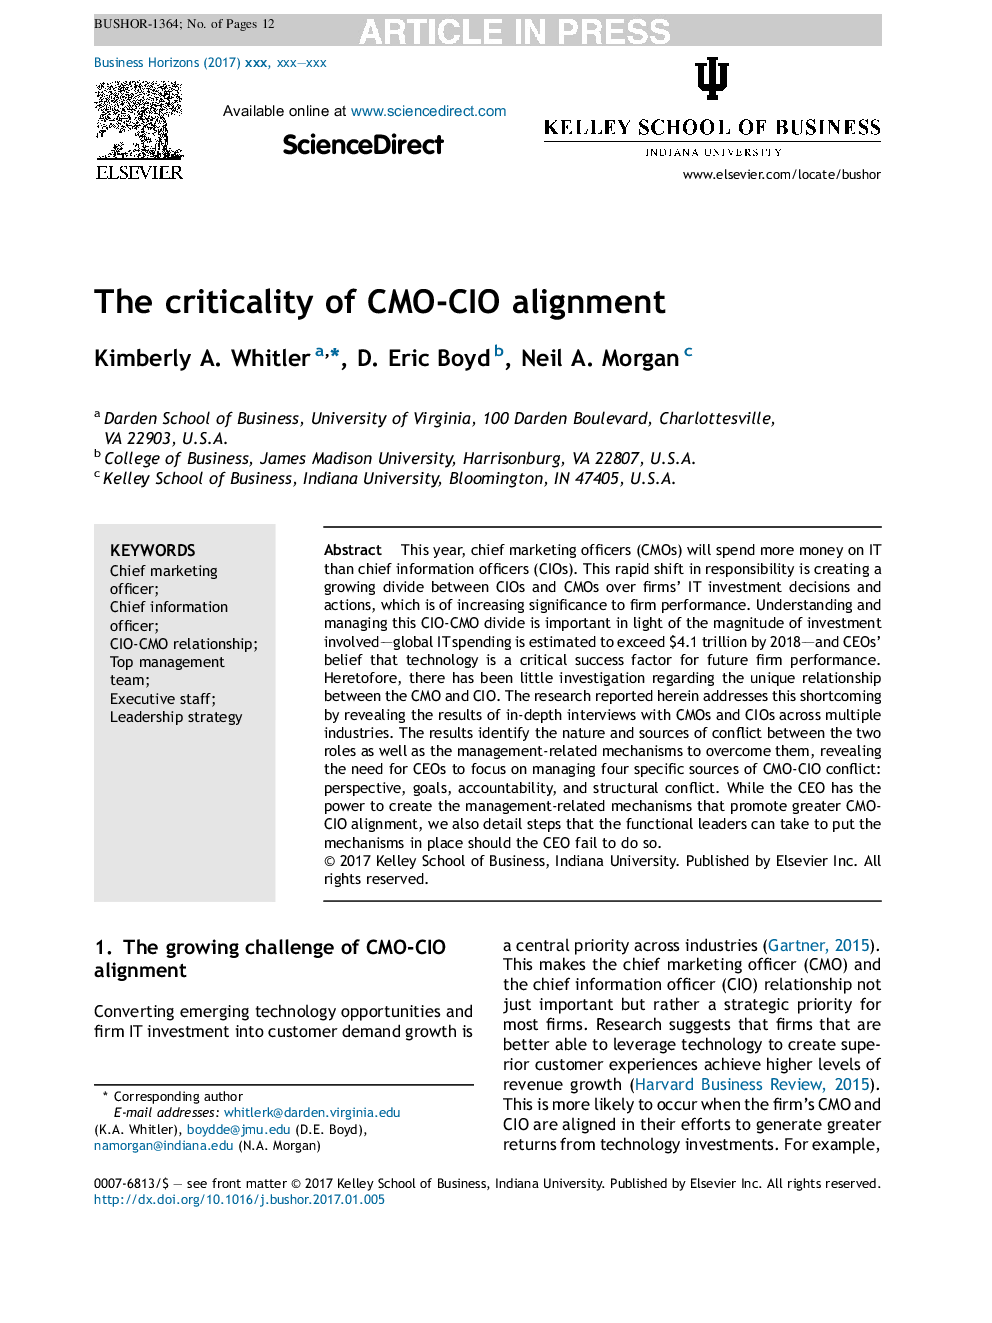 The criticality of CMO-CIO alignment